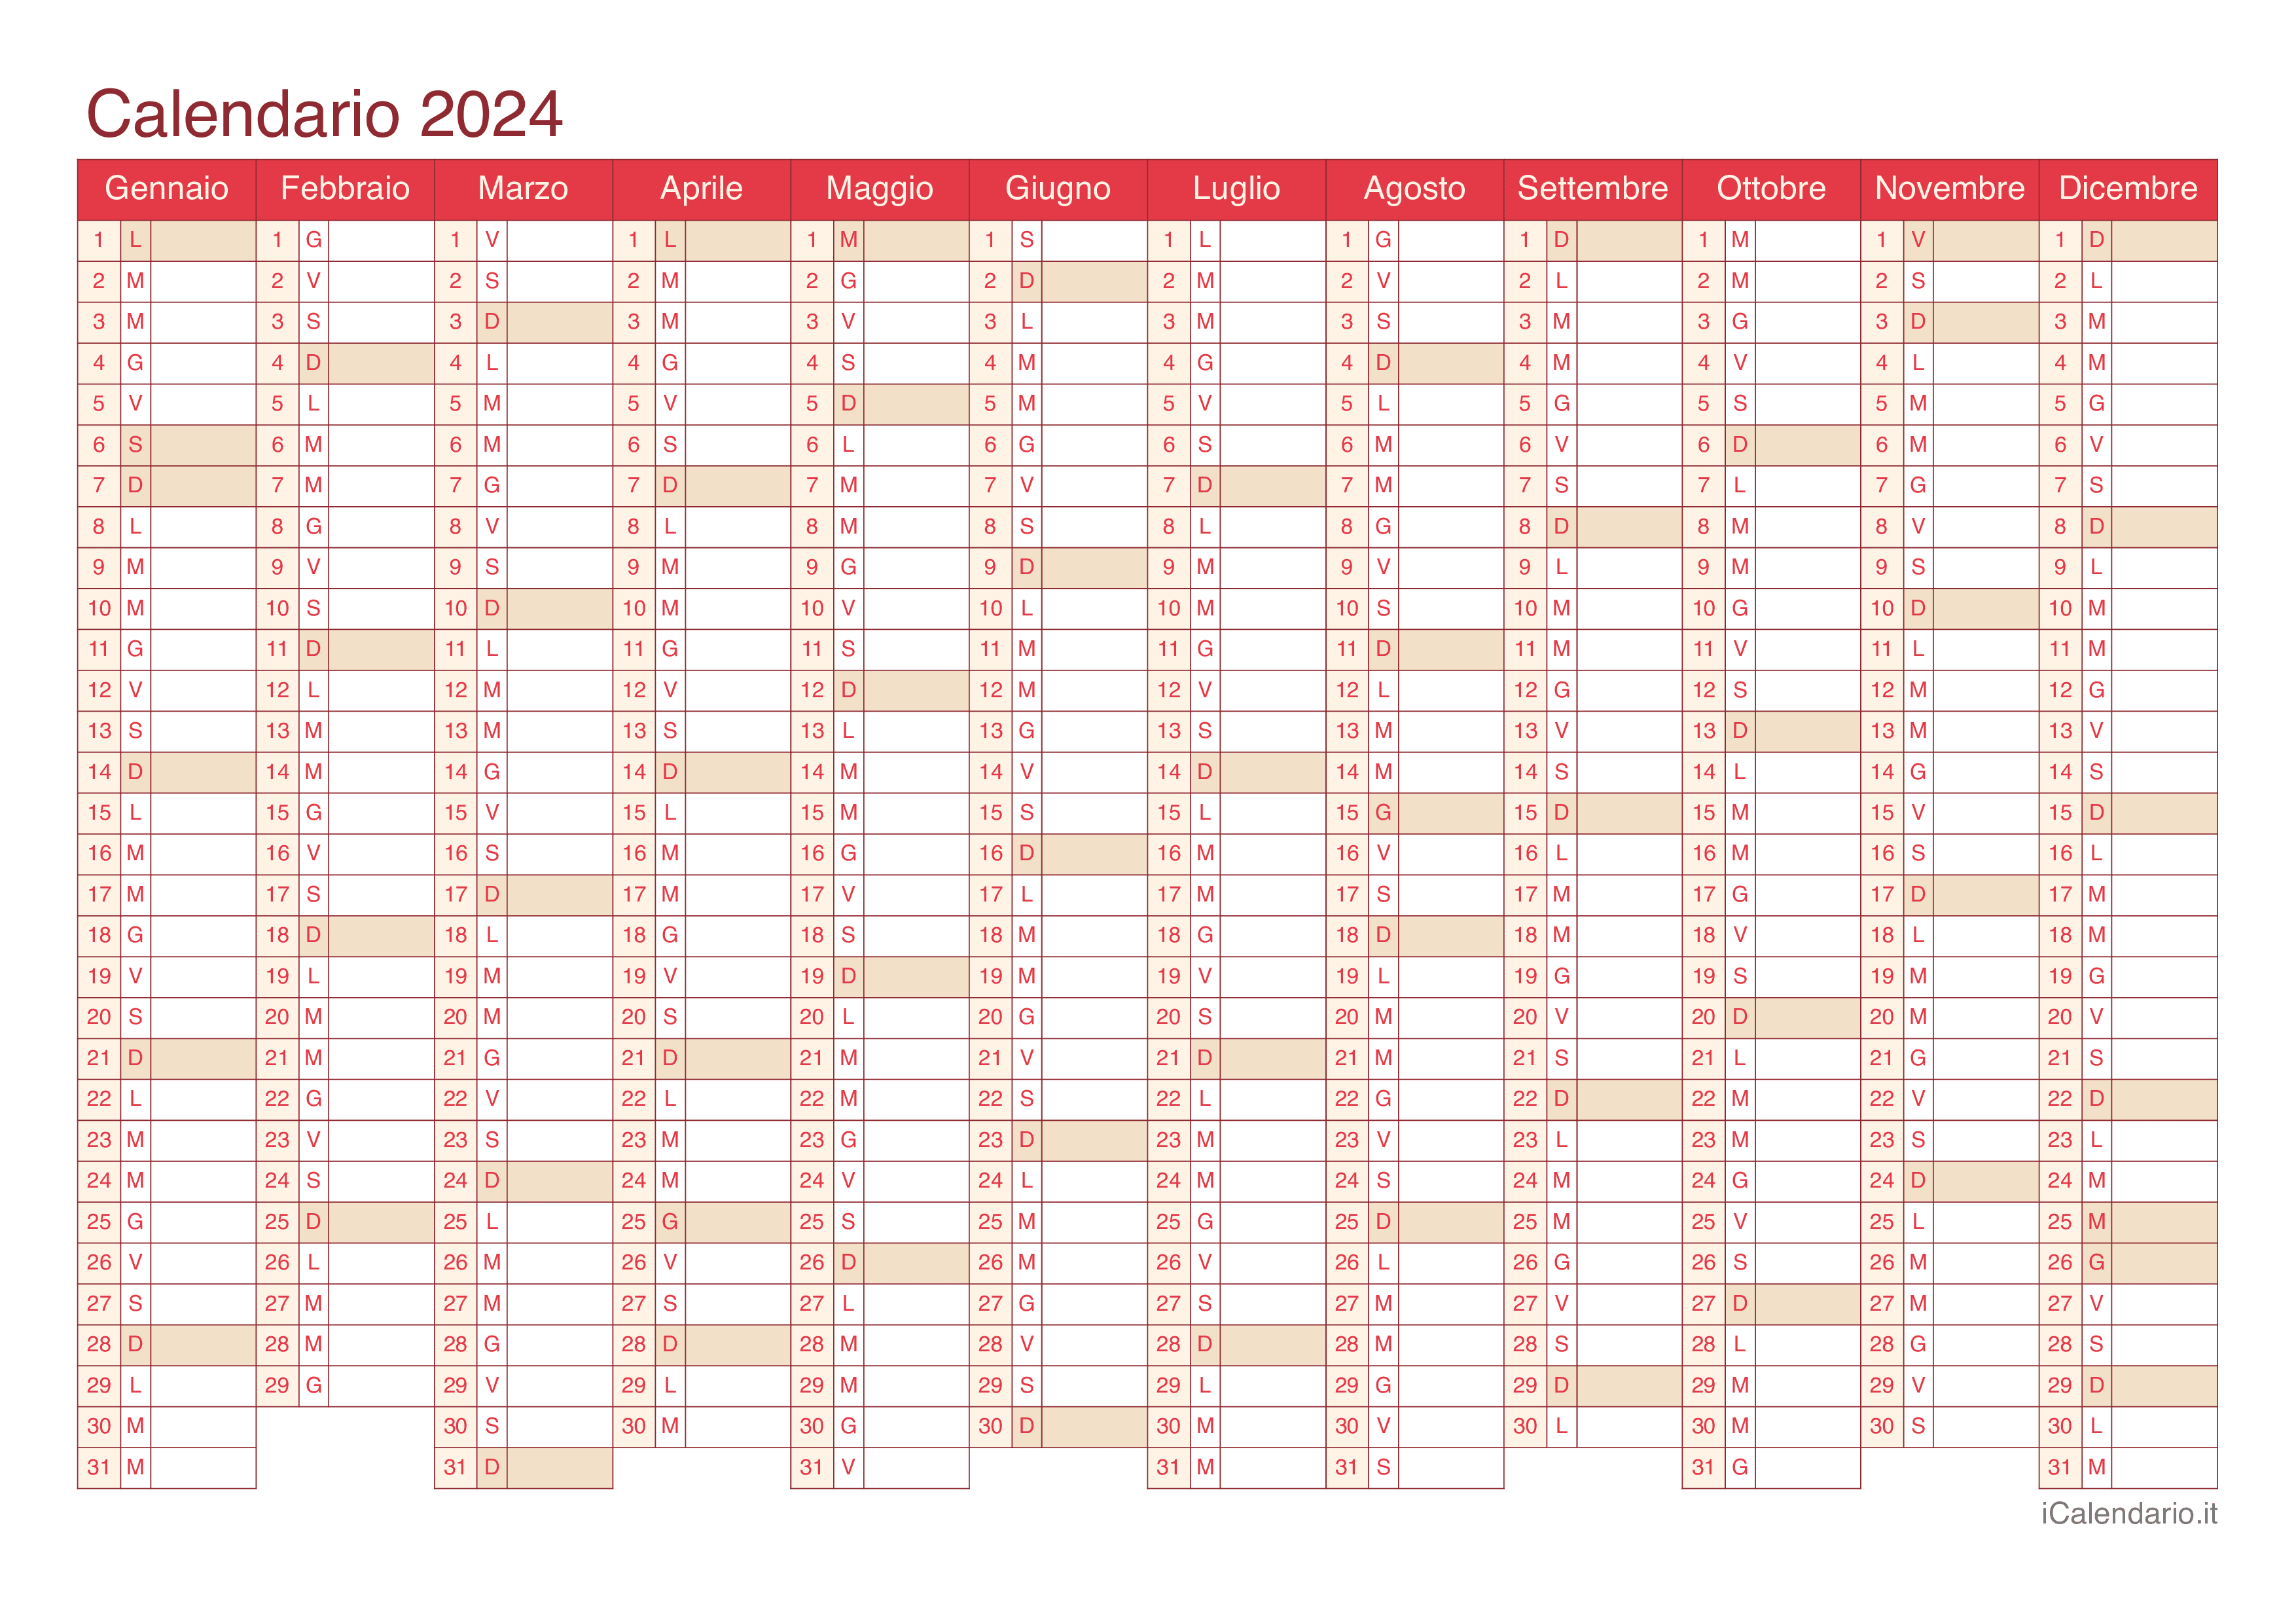 Calendario 2024 da stampare iCalendario.it